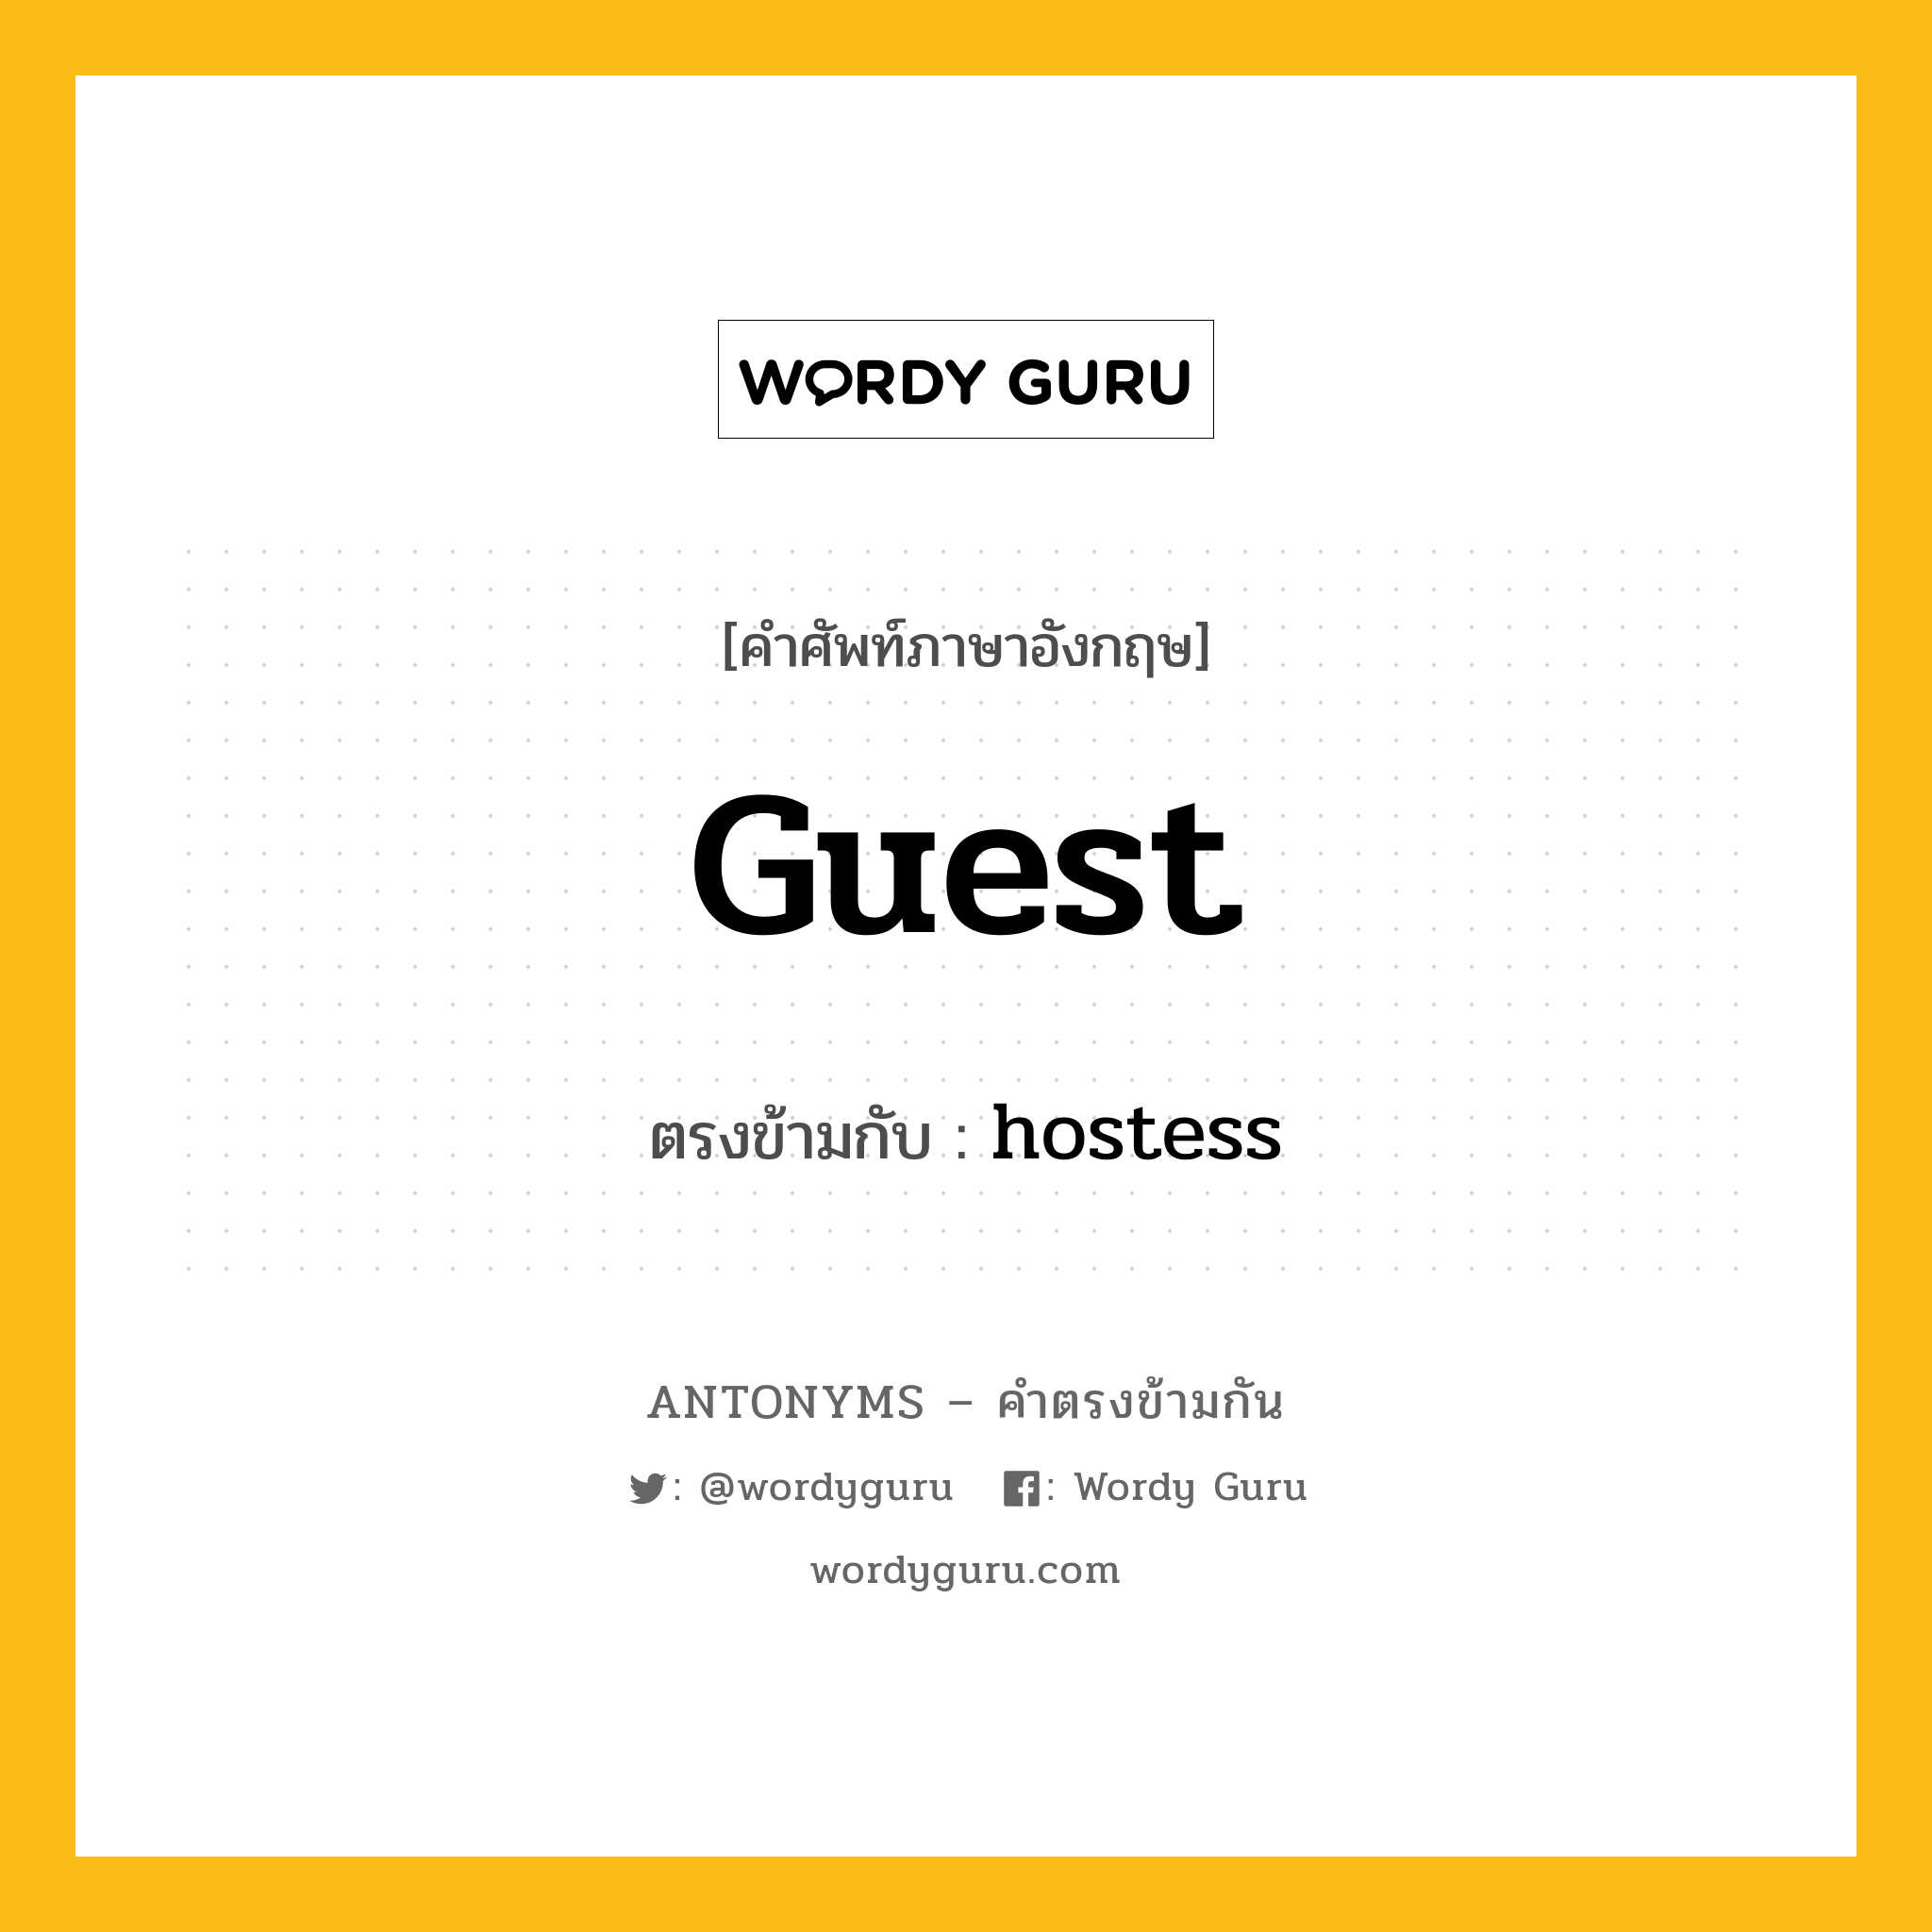 guest เป็นคำตรงข้ามกับคำไหนบ้าง?, คำศัพท์ภาษาอังกฤษ guest ตรงข้ามกับ hostess หมวด hostess